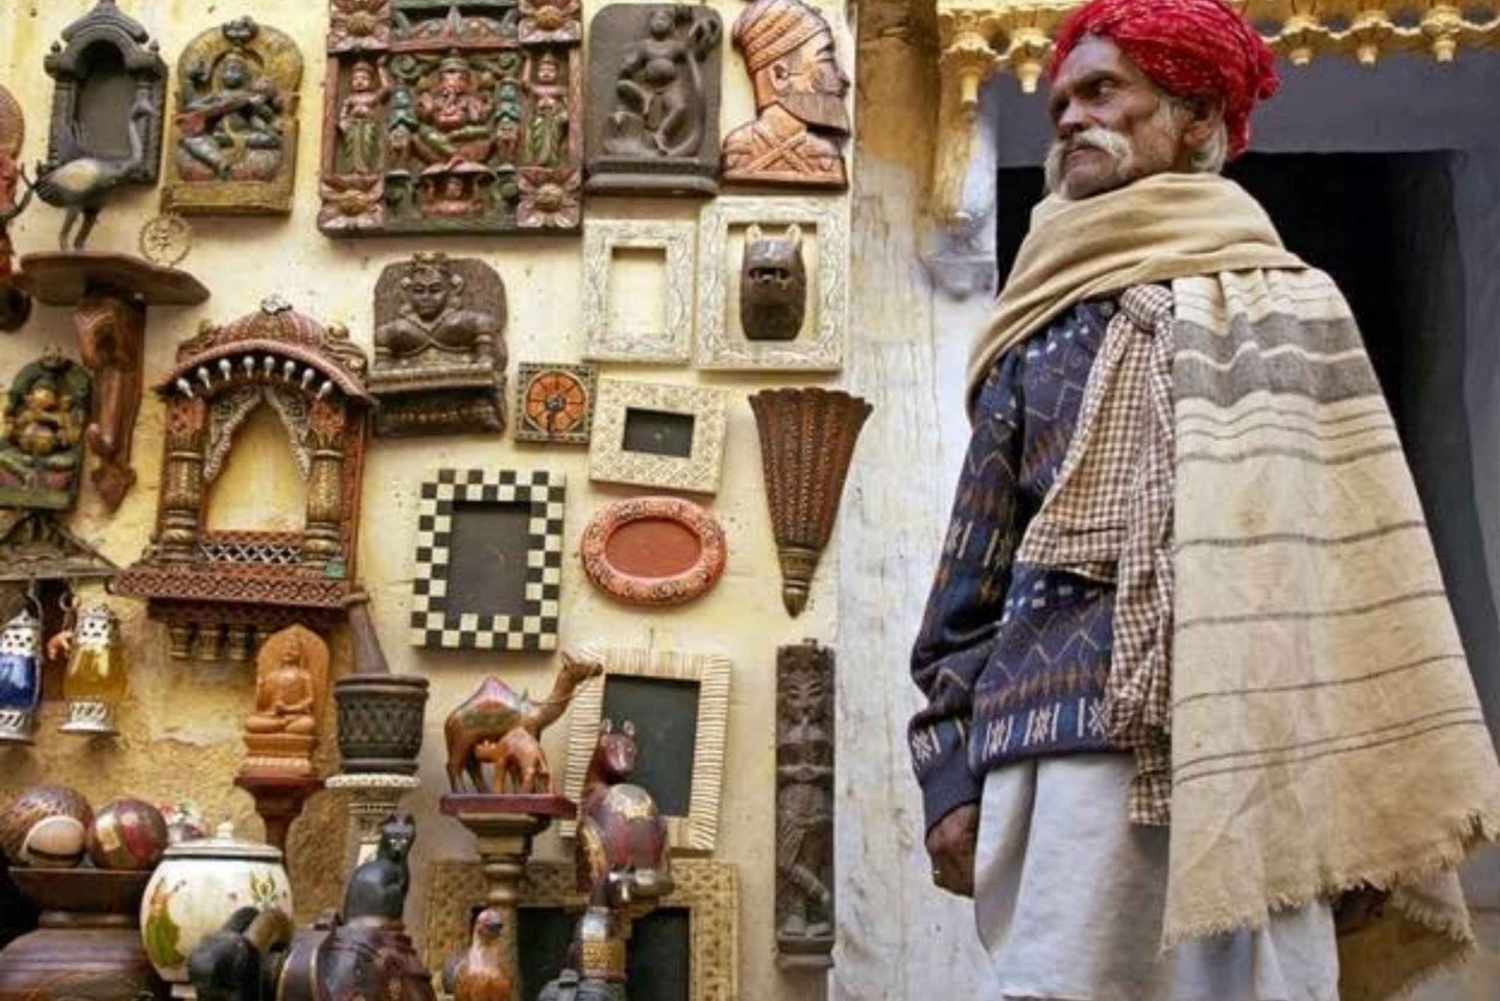 Marchés colorés de Jaisalmer (visite guidée de 3 heures)